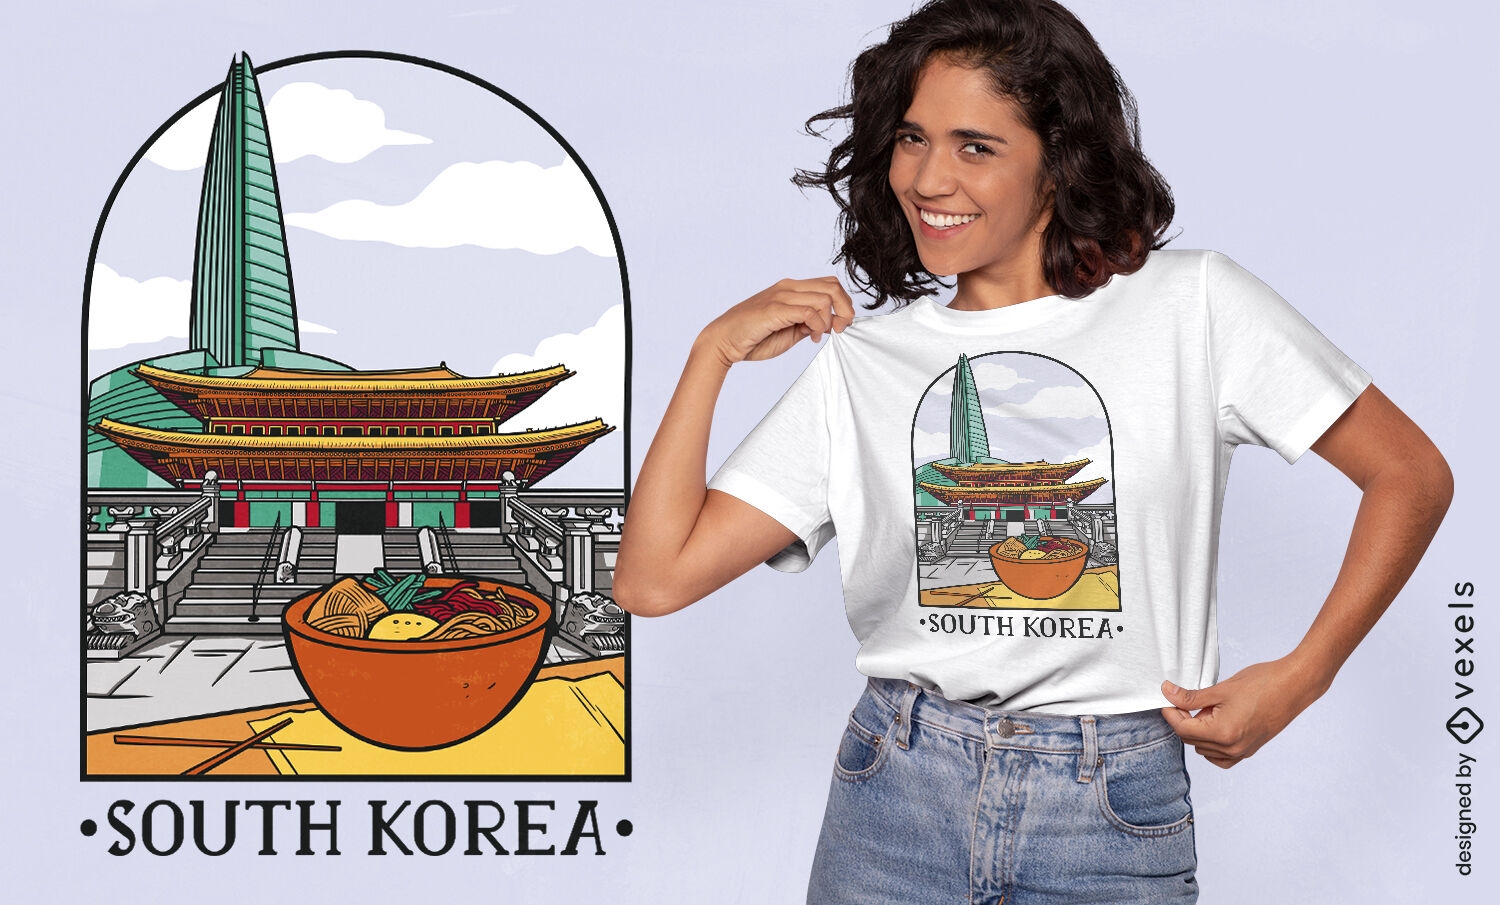 Sehenswürdigkeiten Südkoreas und Food-T-Shirt-Design